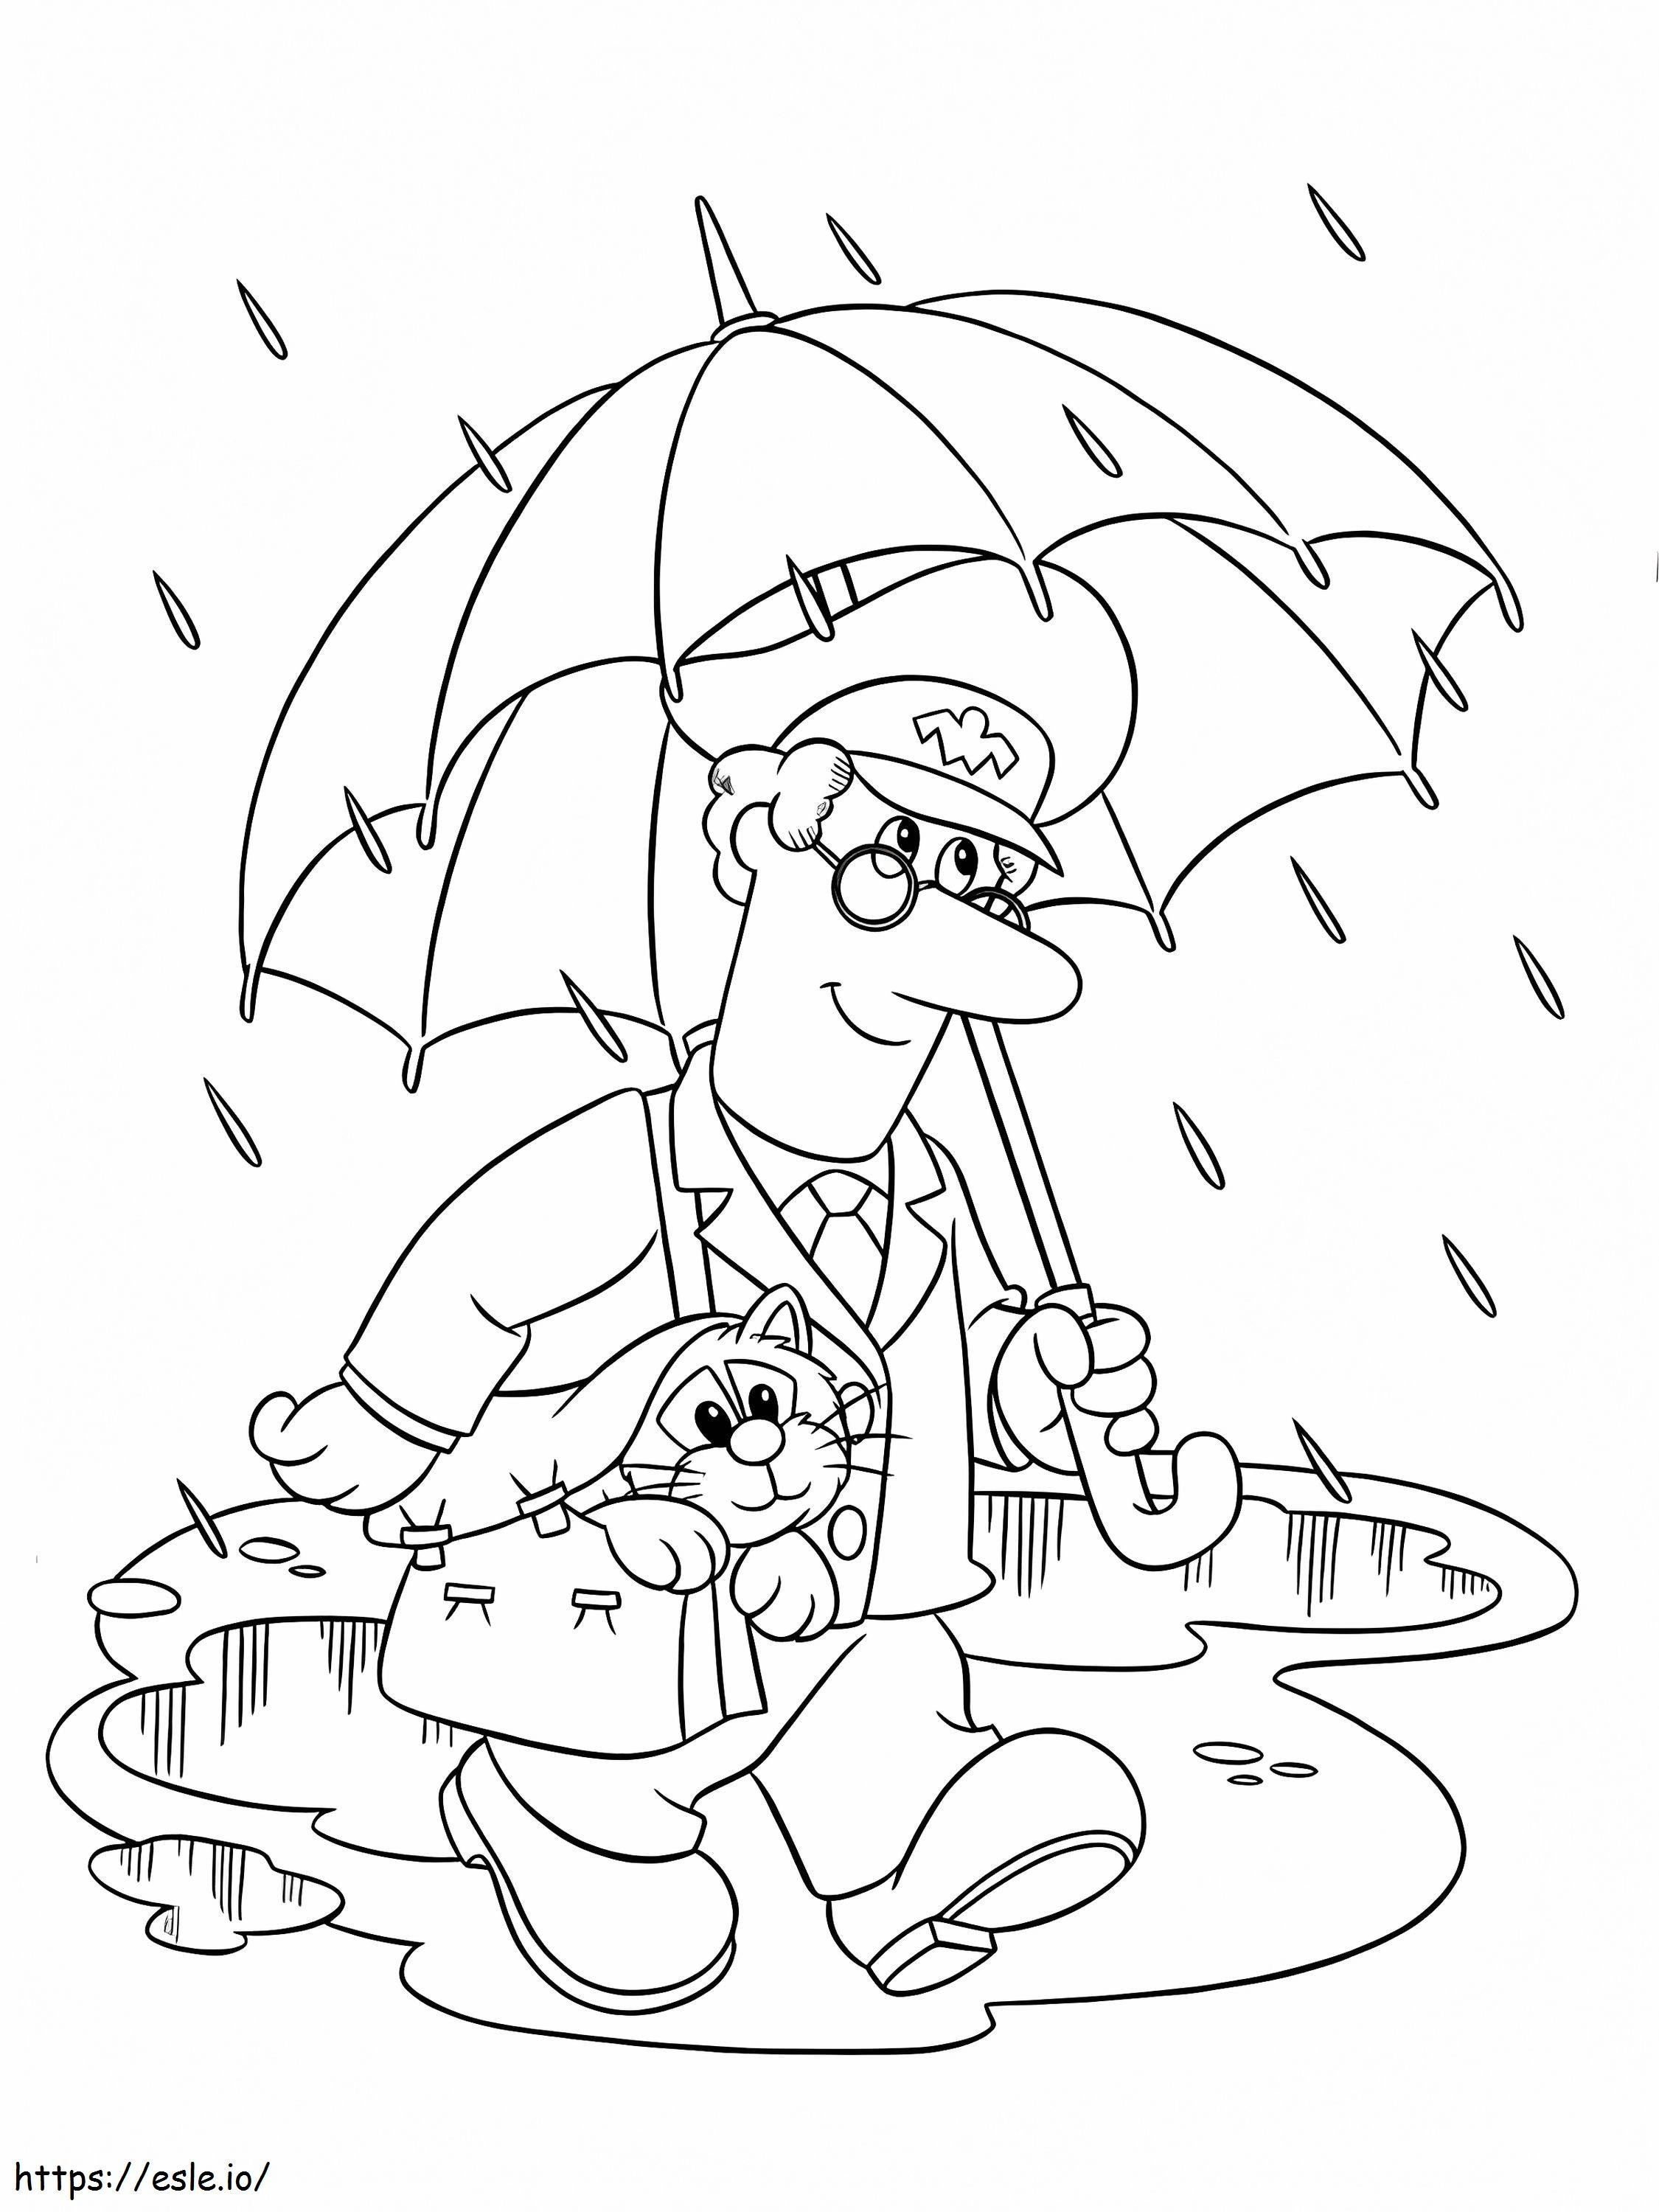 Postacı Pat ve Yağmurda Yürüyen Kedisi boyama